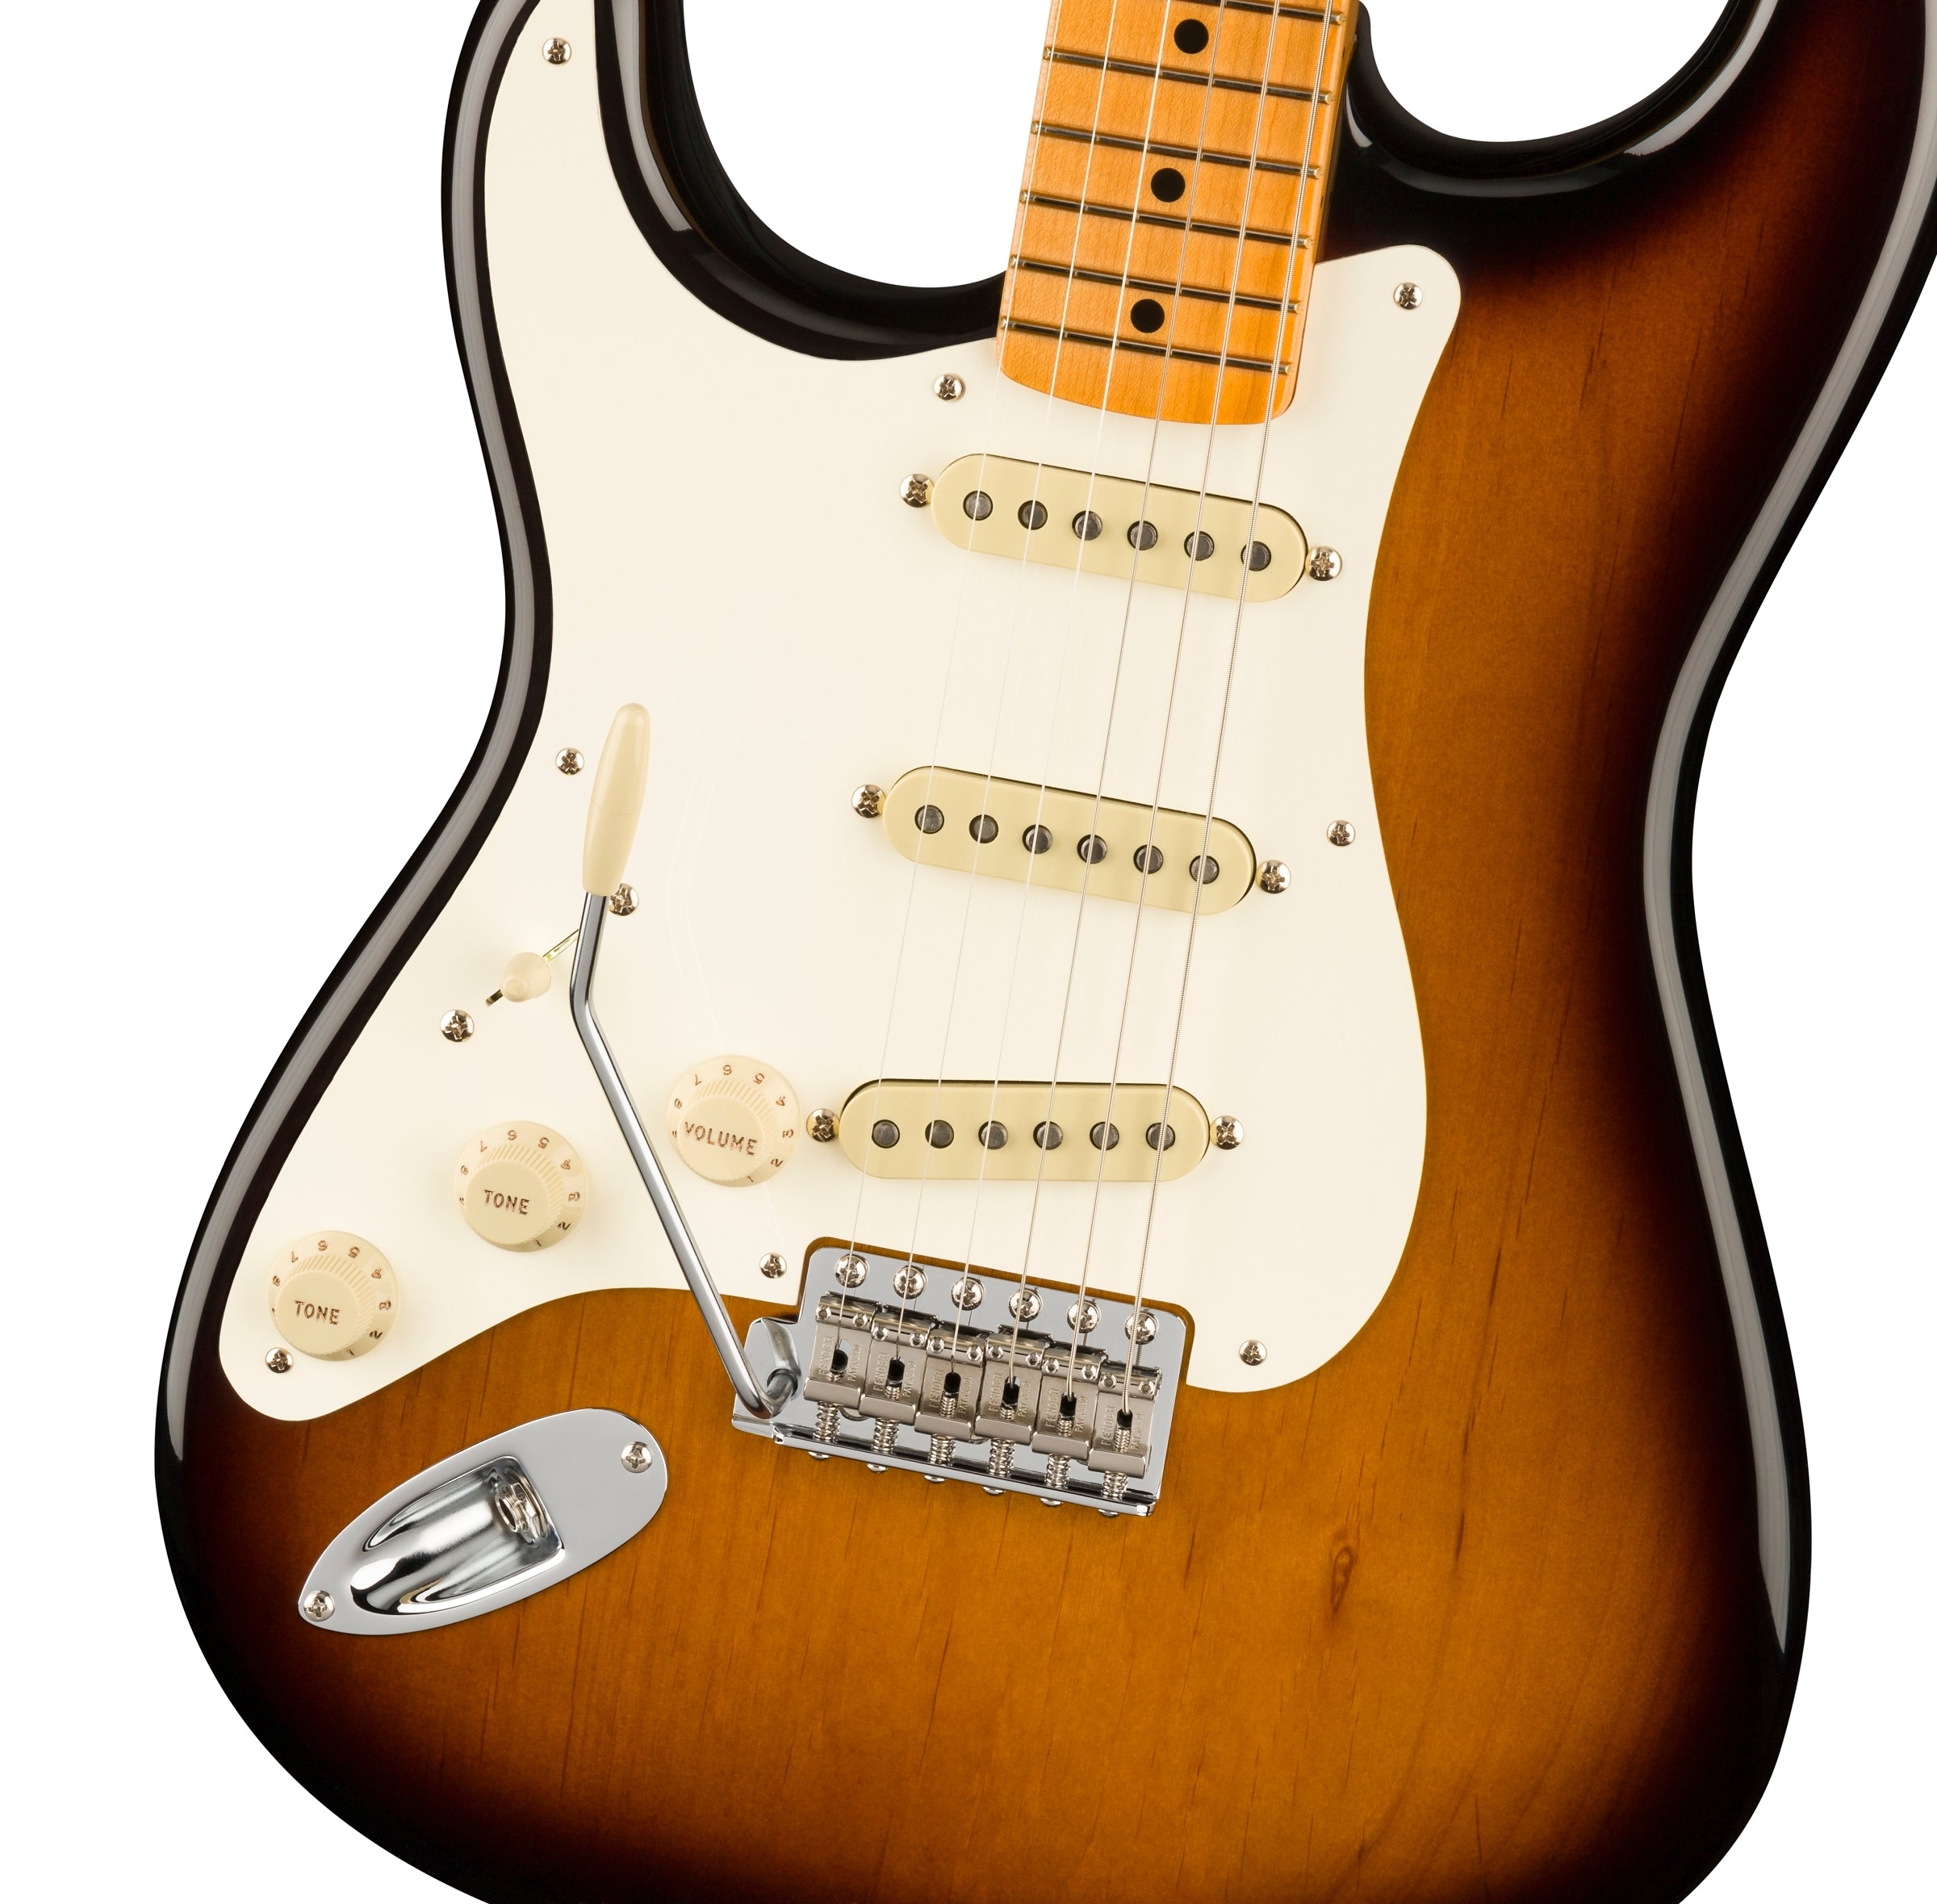 Fender American Vintage II 1957 Stratocaster Left-Handed, 2-Color Sunburst